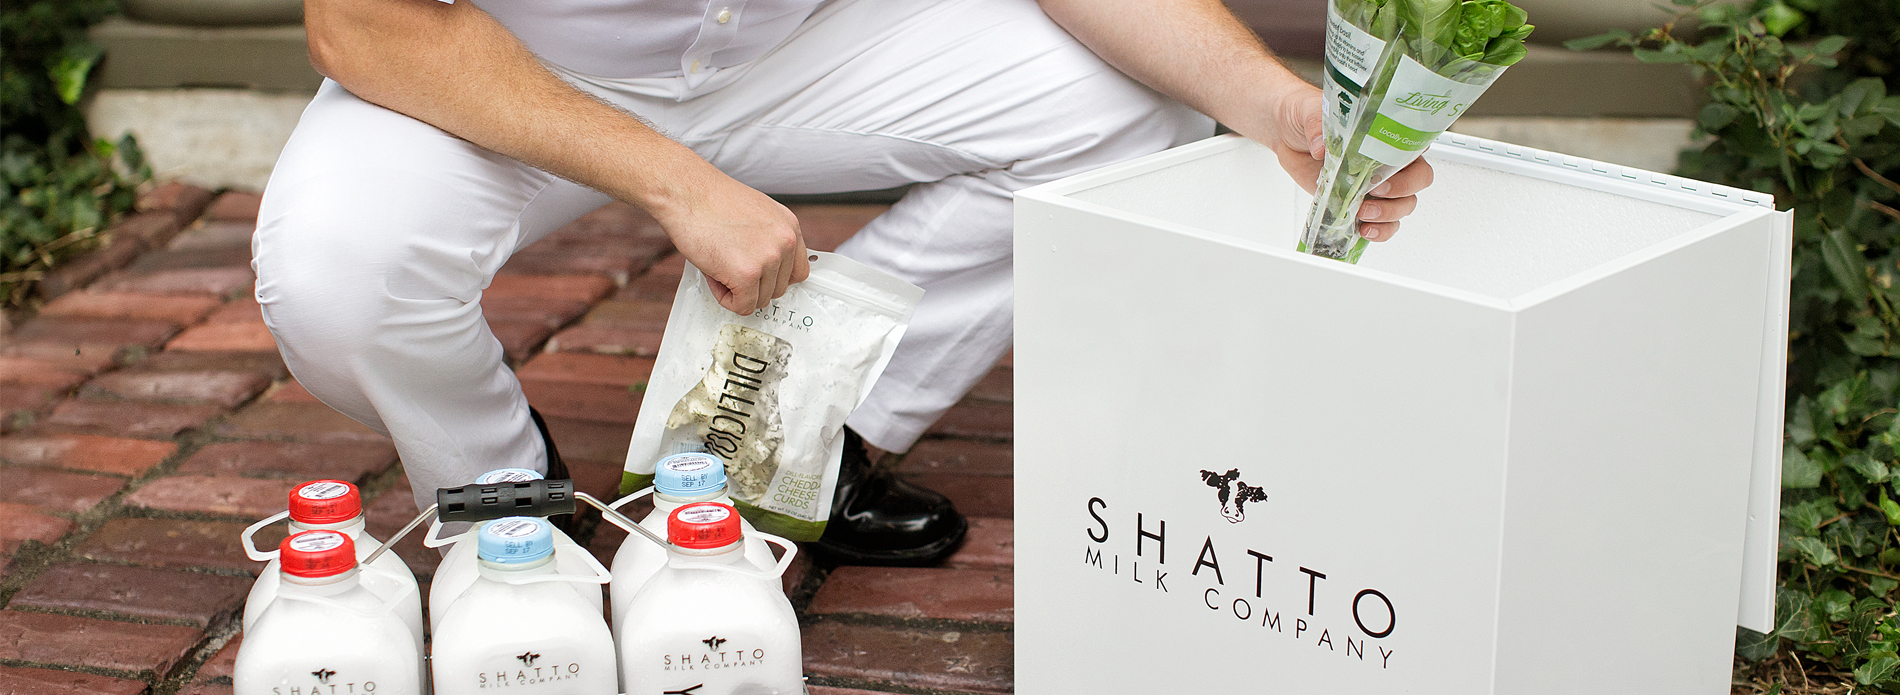 Shatto Milk Delivery Routes Wcidadenewsitau